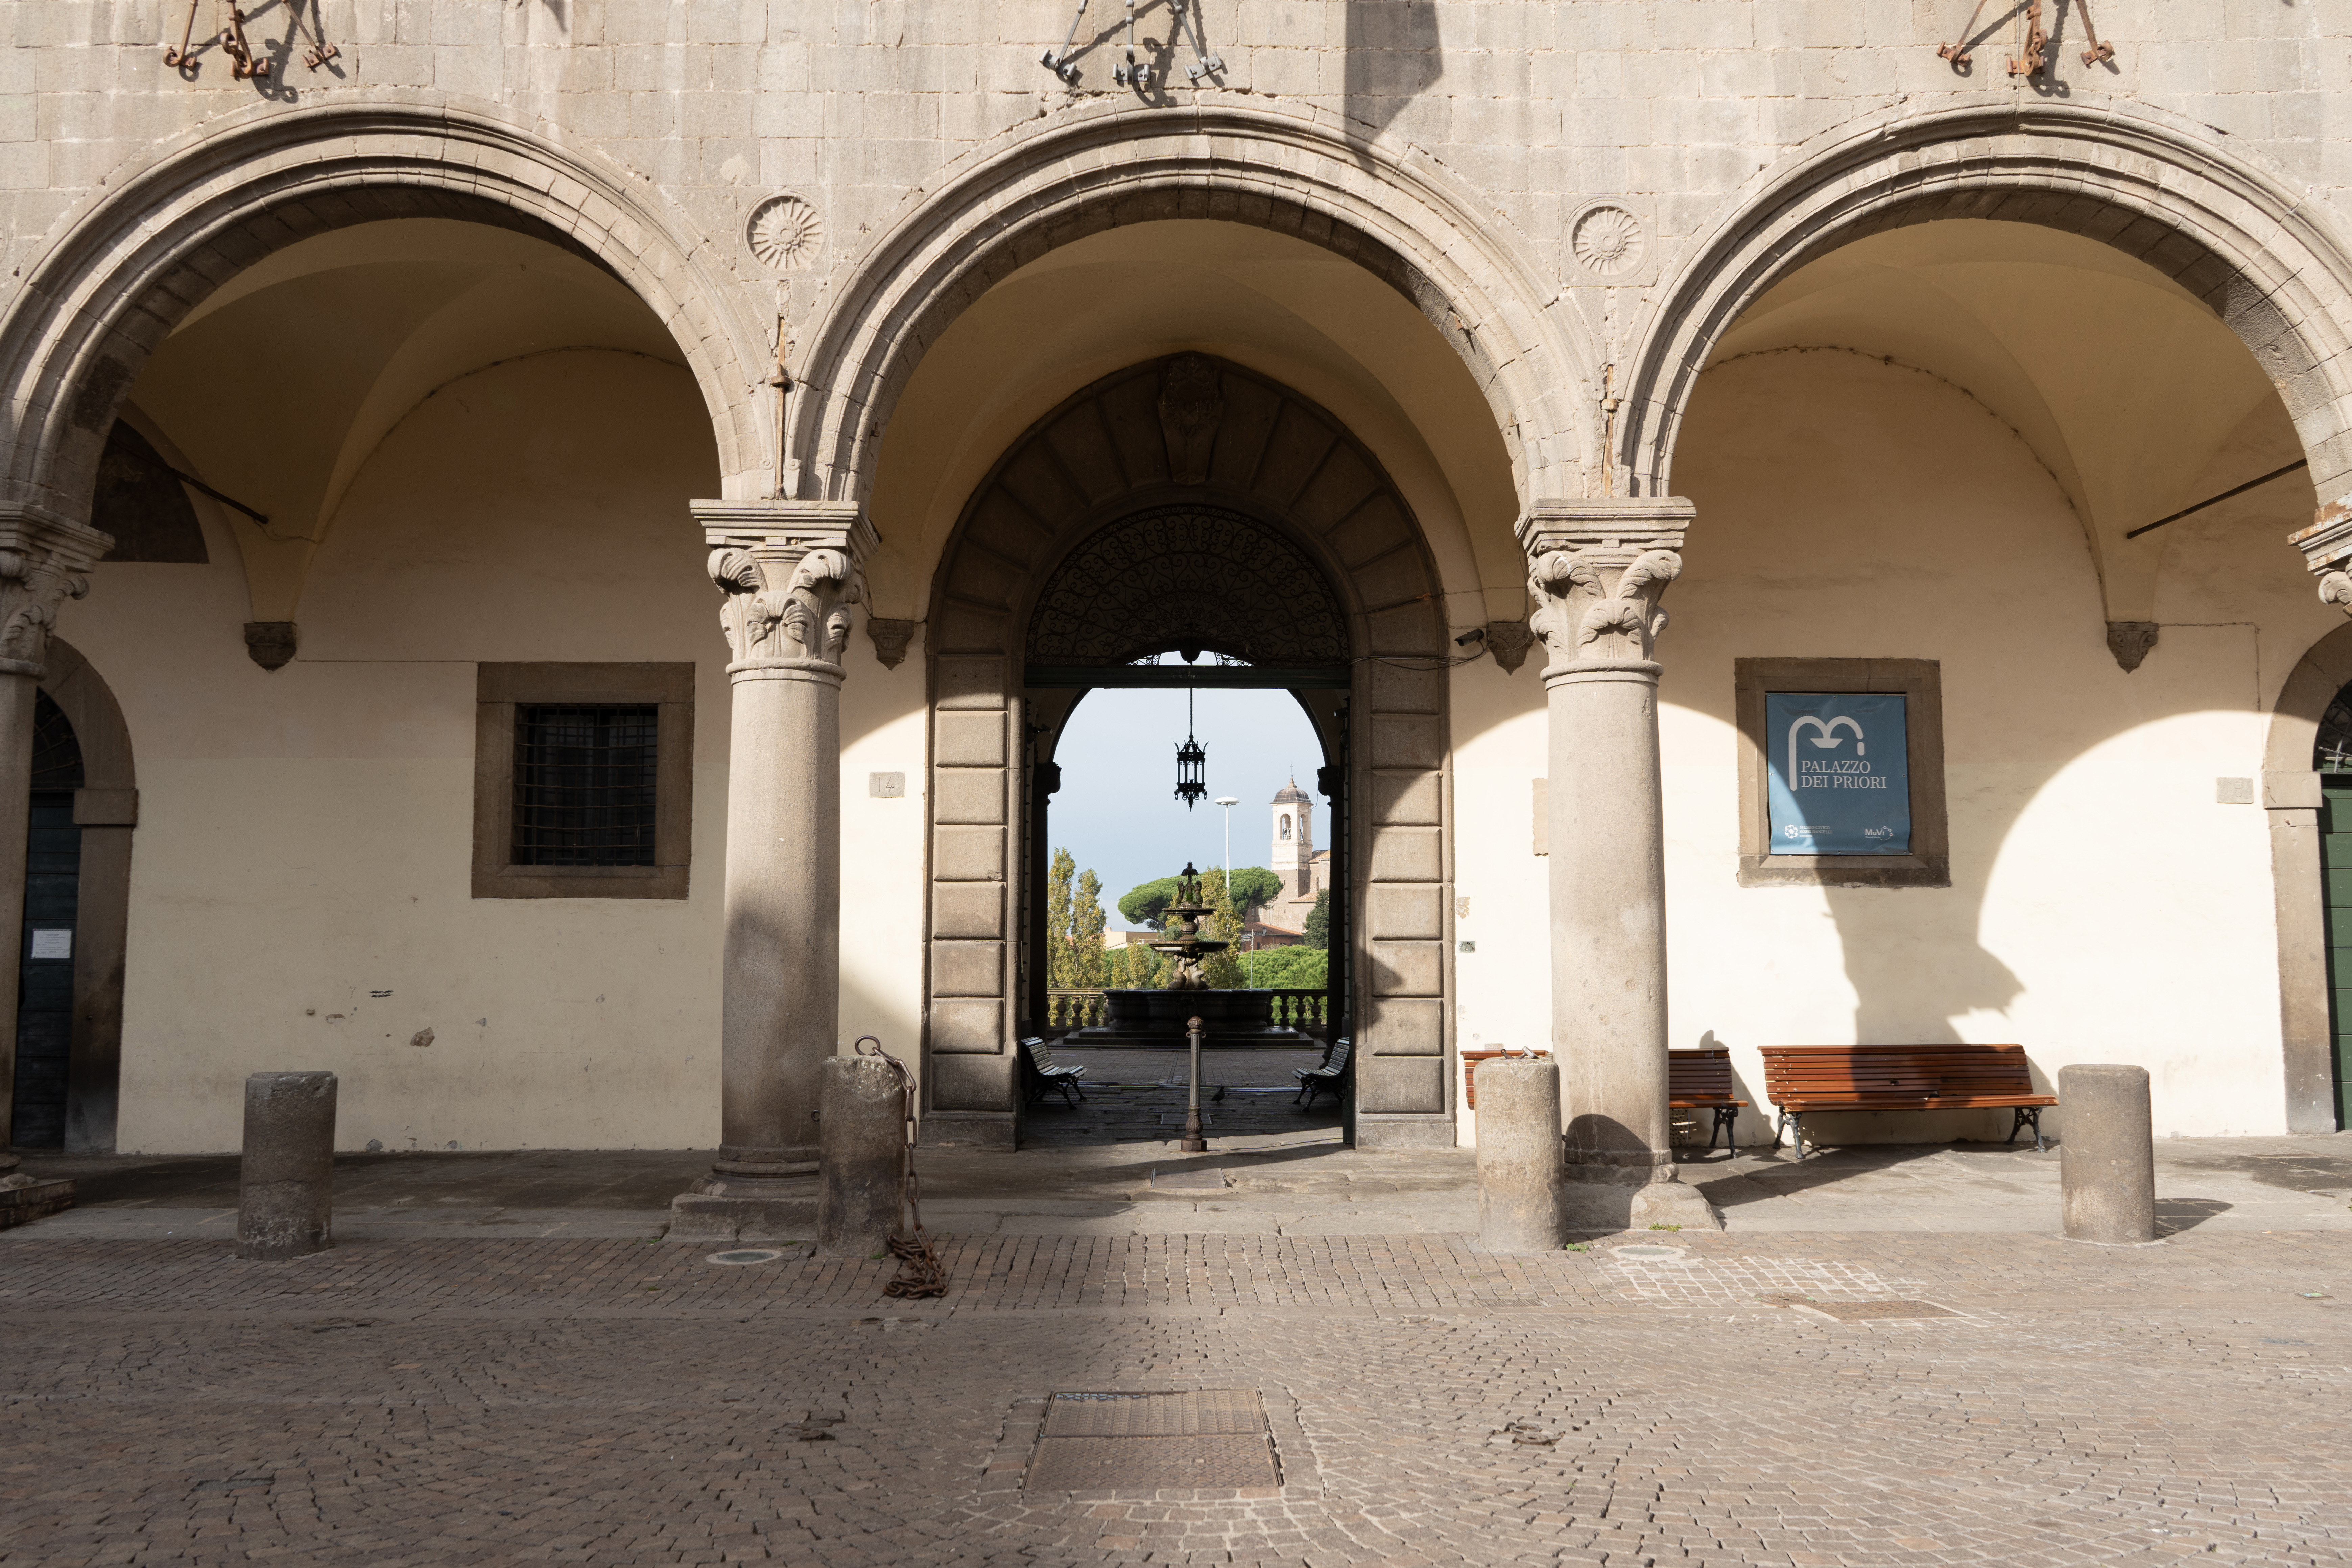 Foto dell'ingresso al museo dei portici visto dal centro di piazza del plebiscito